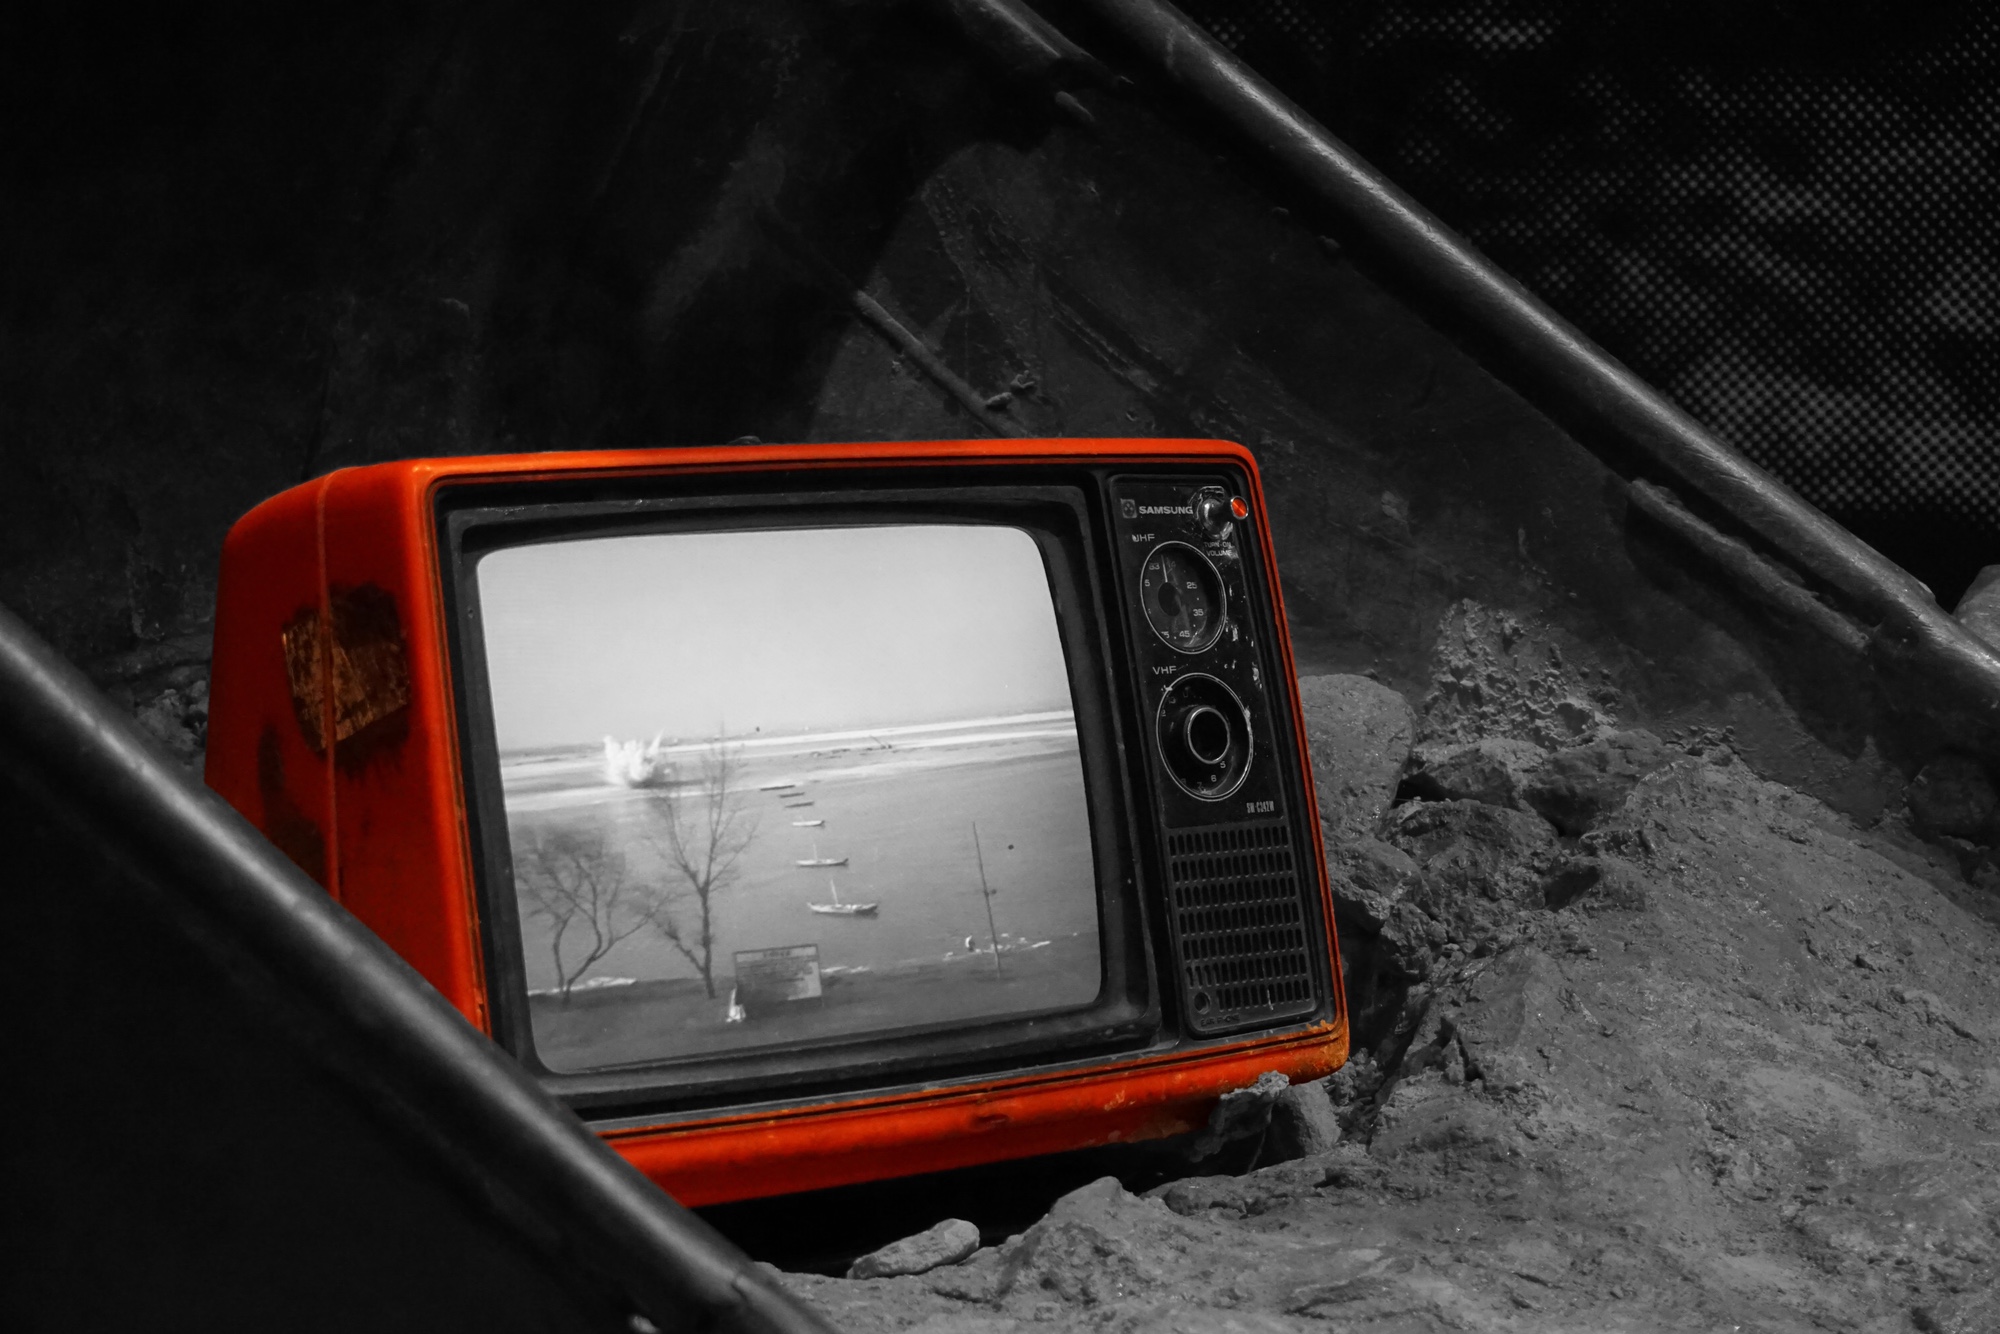 Bild: Roter Fernseher mit Röhrenbildschirm